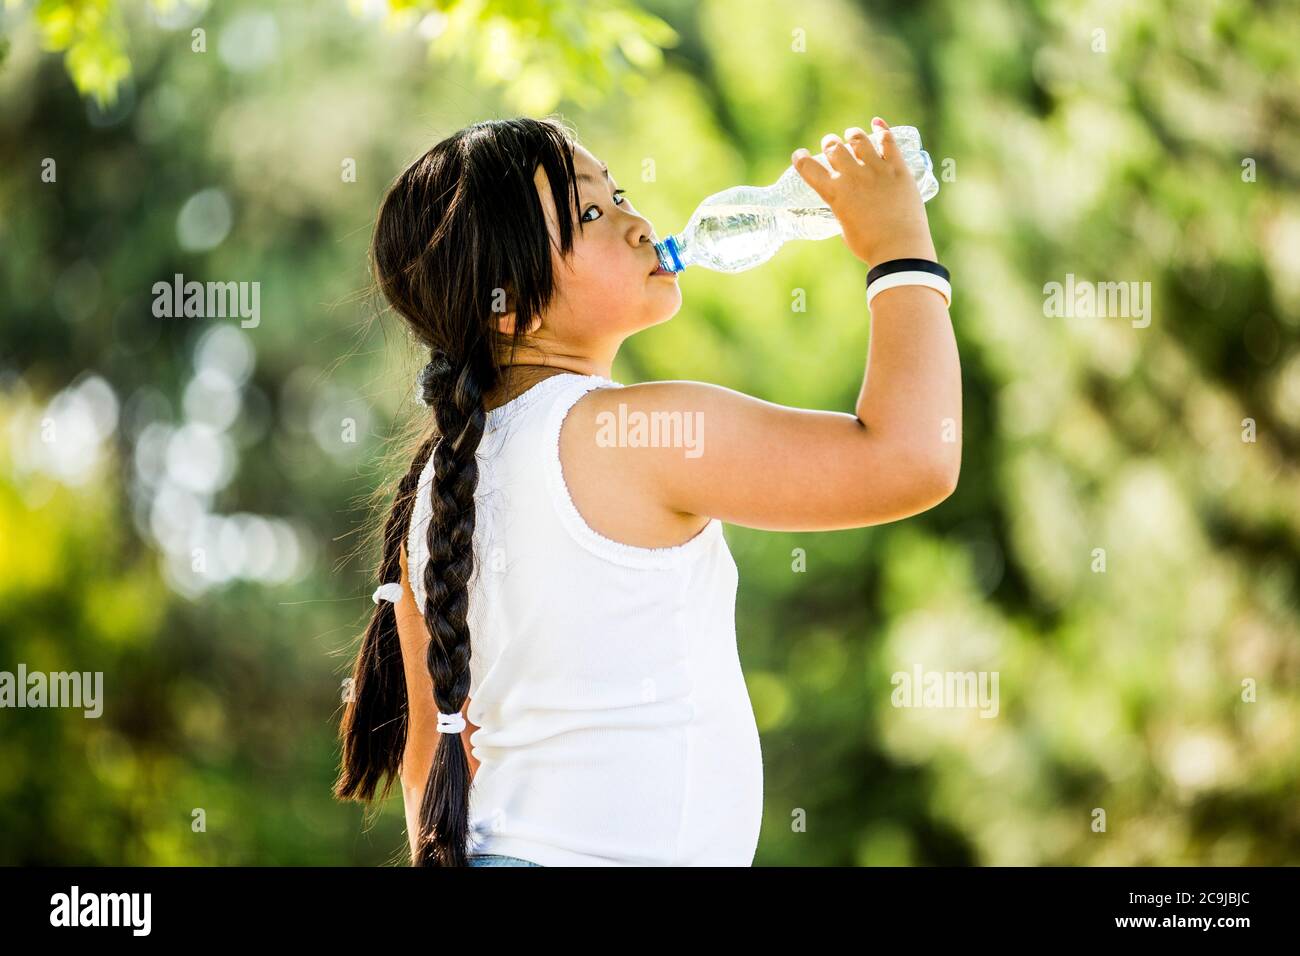 Mädchen Trinkwasser aus Plastikflasche im Park, Porträt. Stockfoto